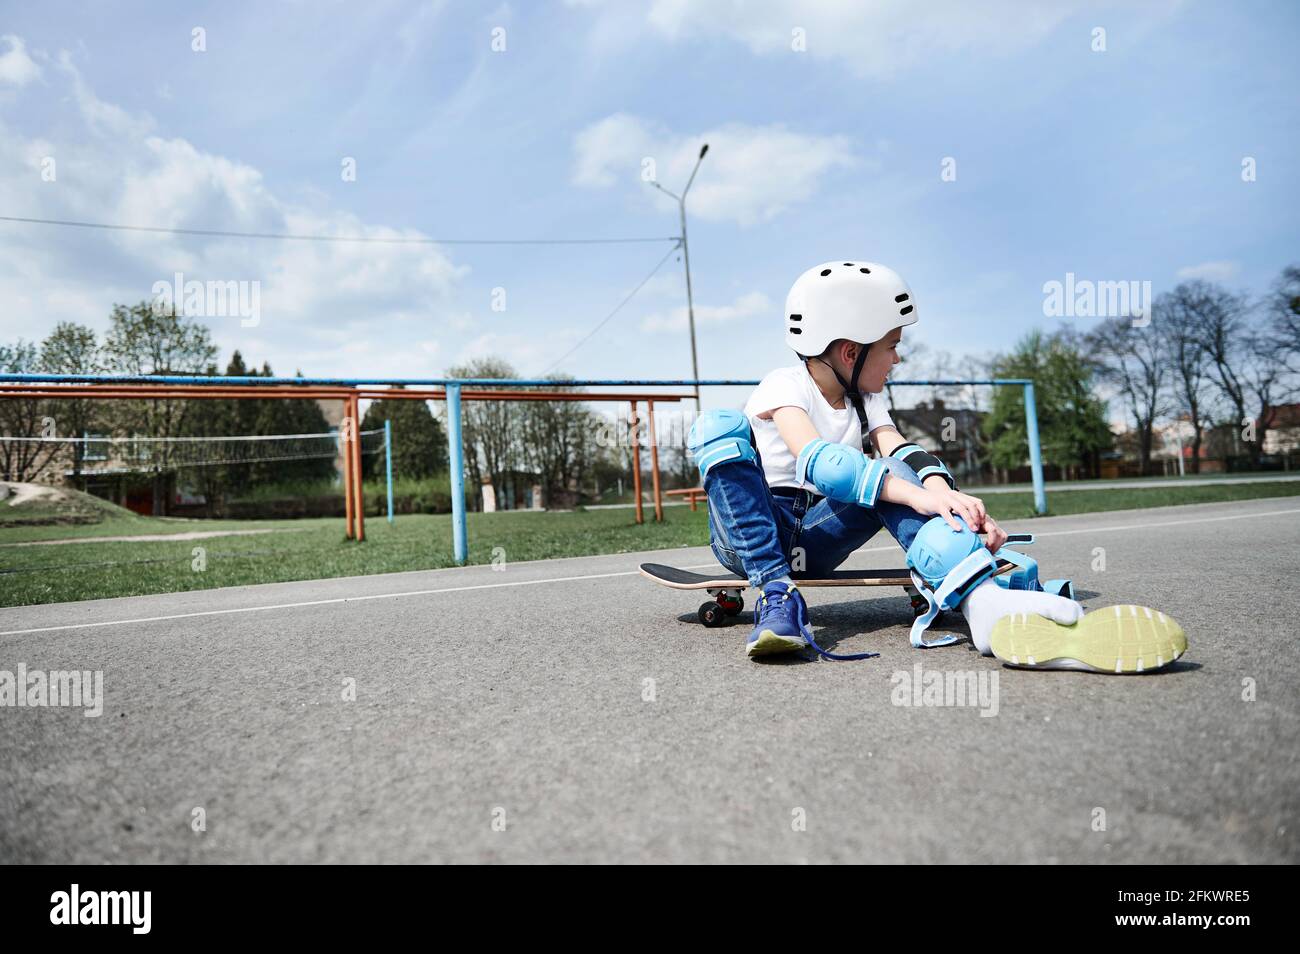 Skateboarder Infantil Monta En Patineta En La Calle. Niño En Una Ciudad De  Verano. Niño Pequeño Niño Pequeño Montando Skateboard E Imagen de archivo -  Imagen de elegante, manera: 264385035